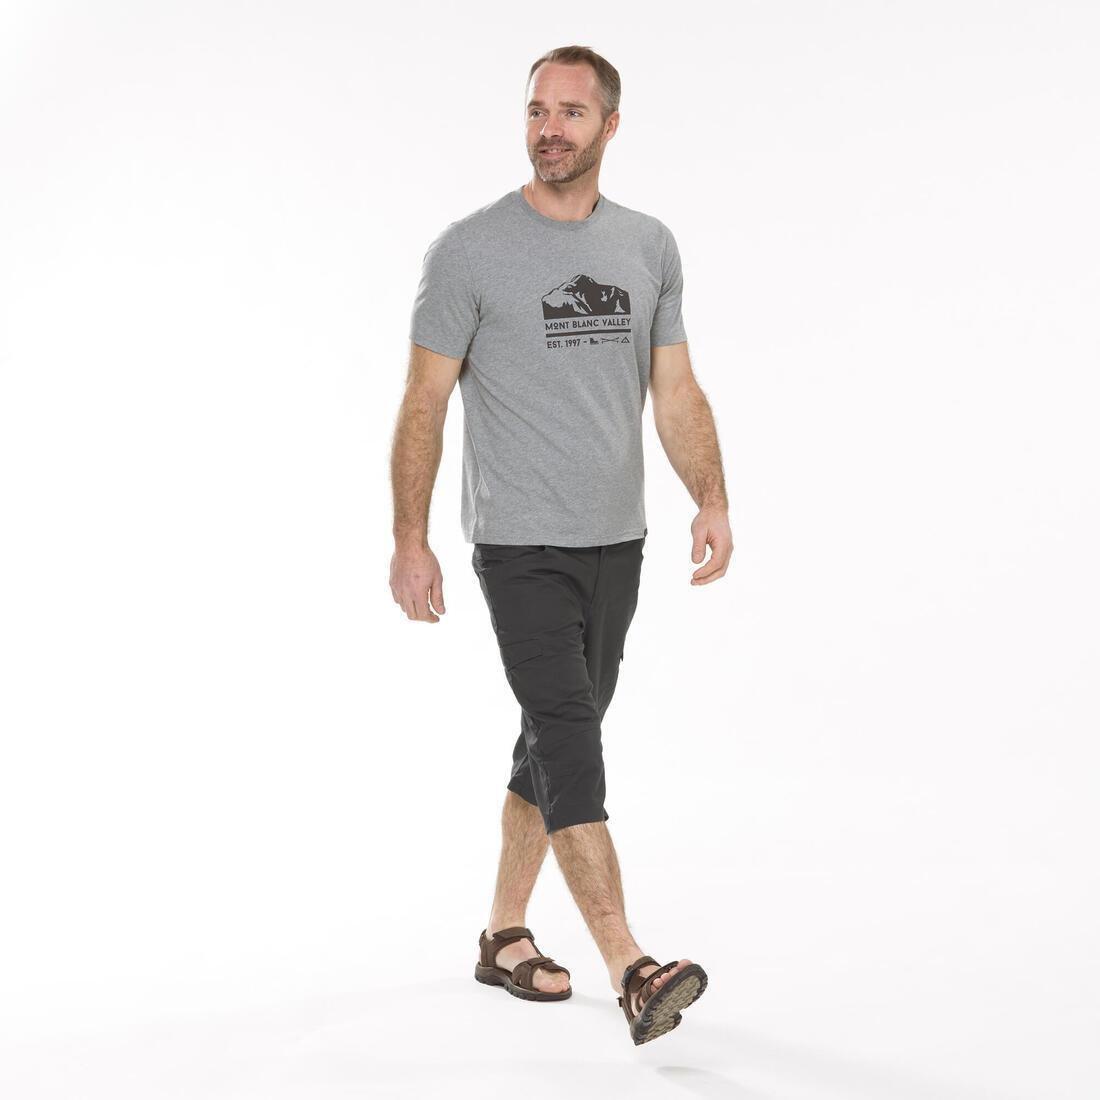 QUECHUA - Men's Country Walking Bermuda Shorts - Nh500 Fresh, Carbon Grey